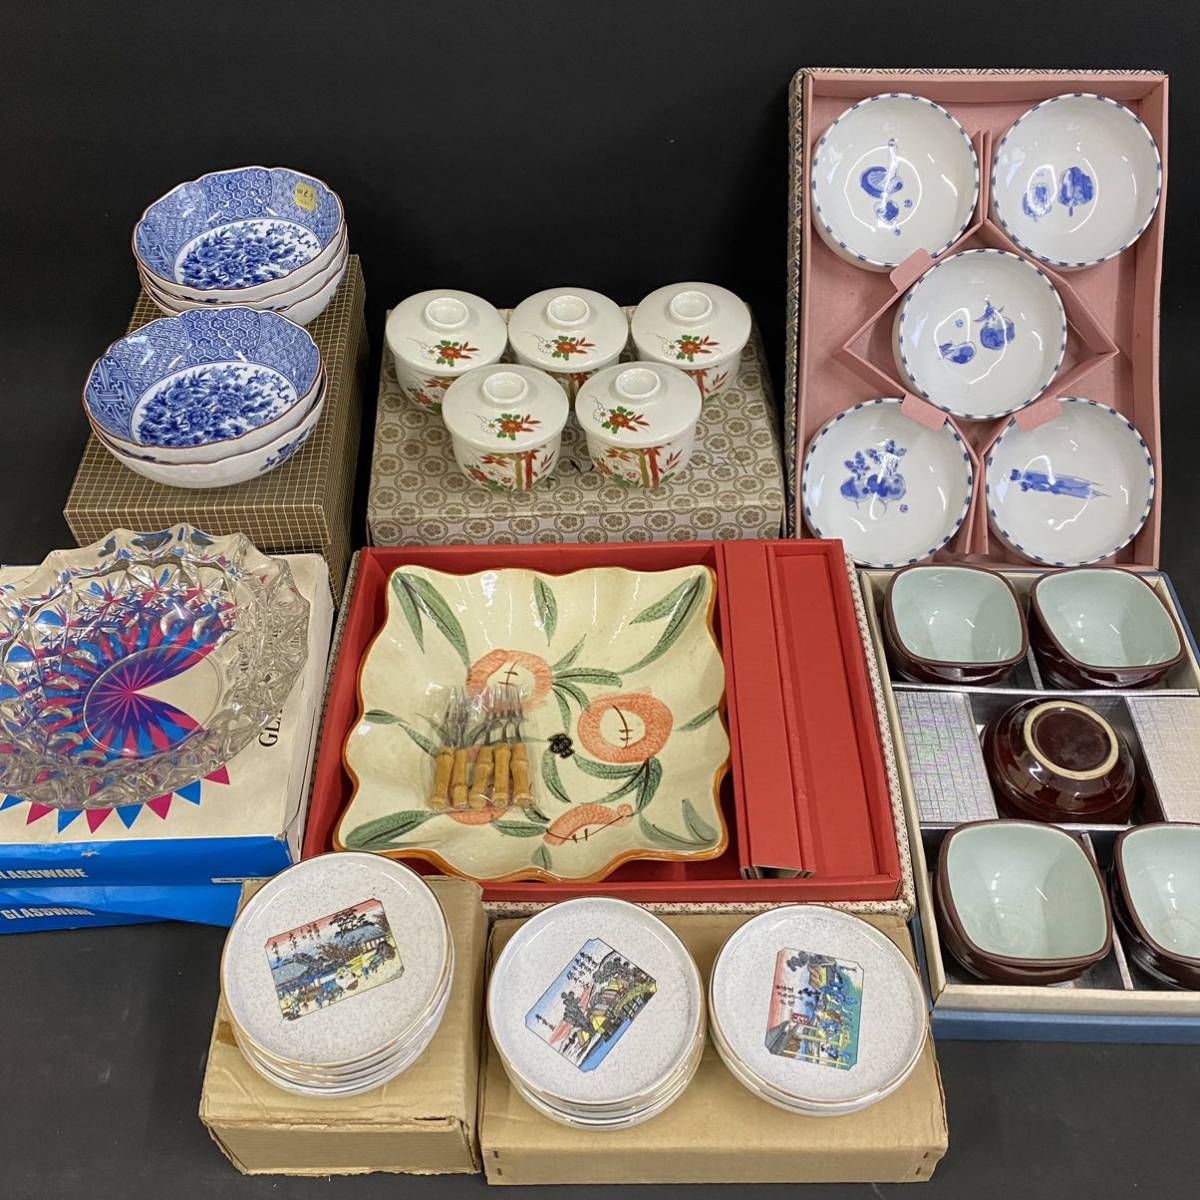 K2547 [Unbenutzte Artikel, Geschirrkollektion in Schachteln] Ryuhō kleine Schüssel, Japanisches Geschirr, handgemalt, mit Deckel, geschnittene Glasplatte, aktueller Gegenstand, Antiquität, Sammlung, verschiedene Waren, Andere